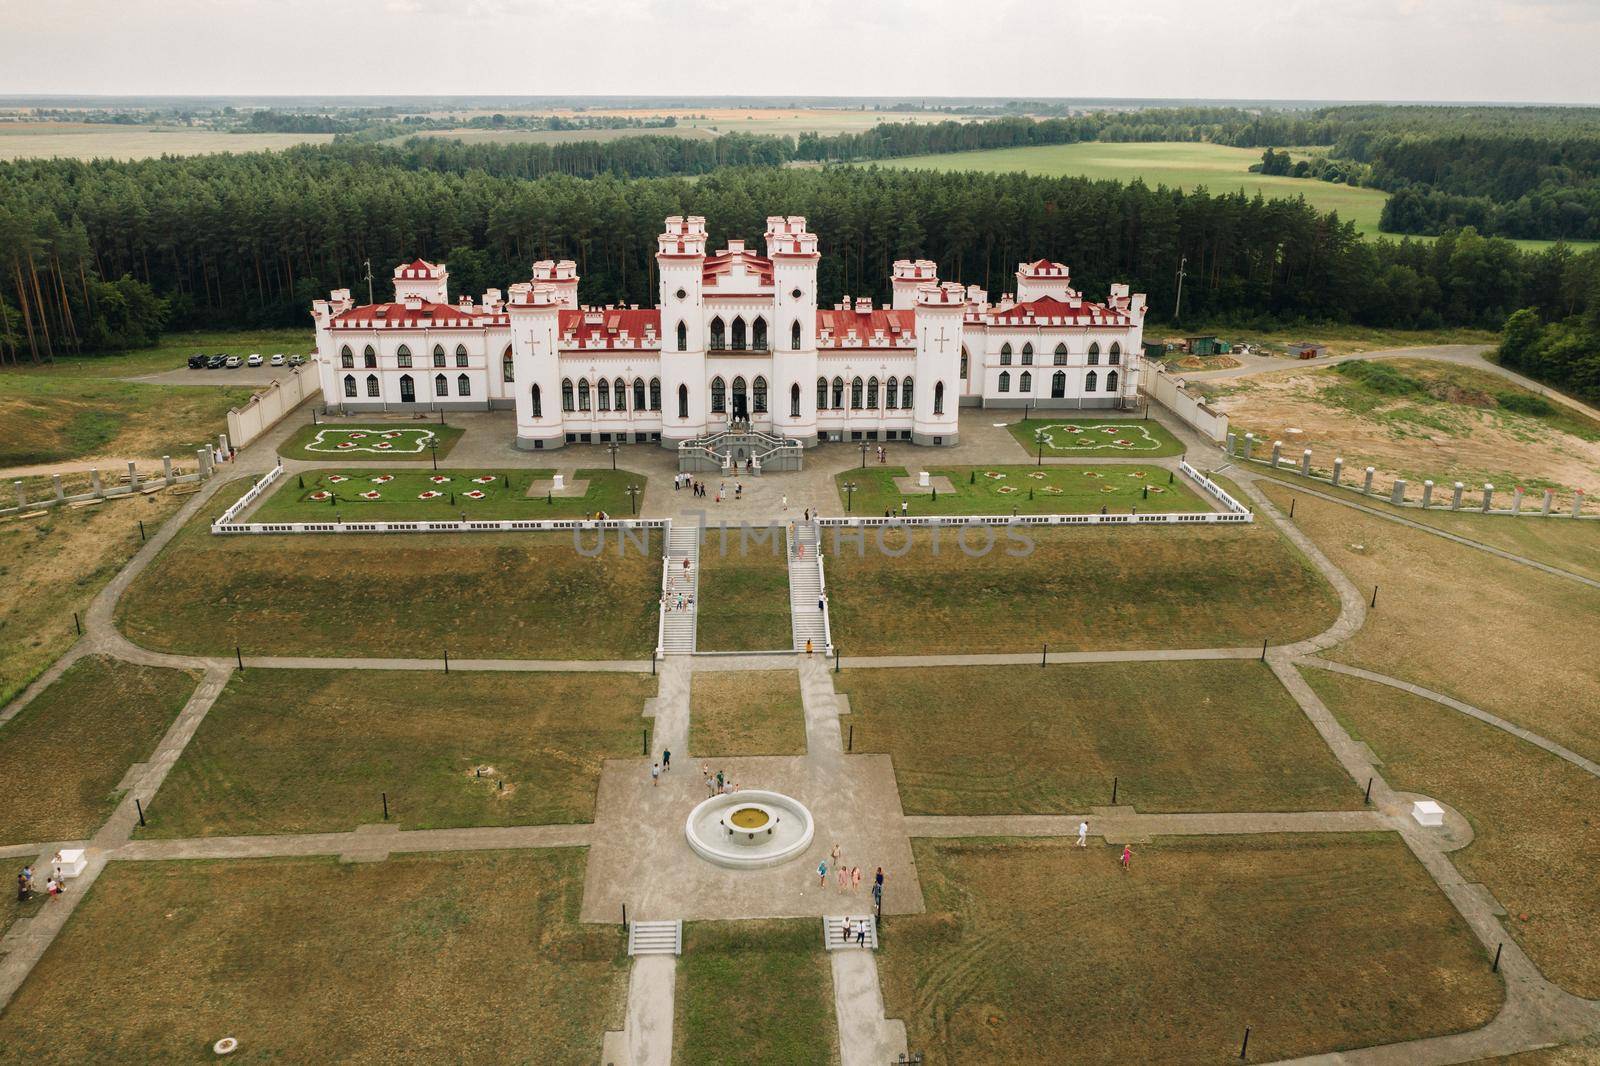 Summer Kossovsky Castle in Belarus.Puslovsky Palace.